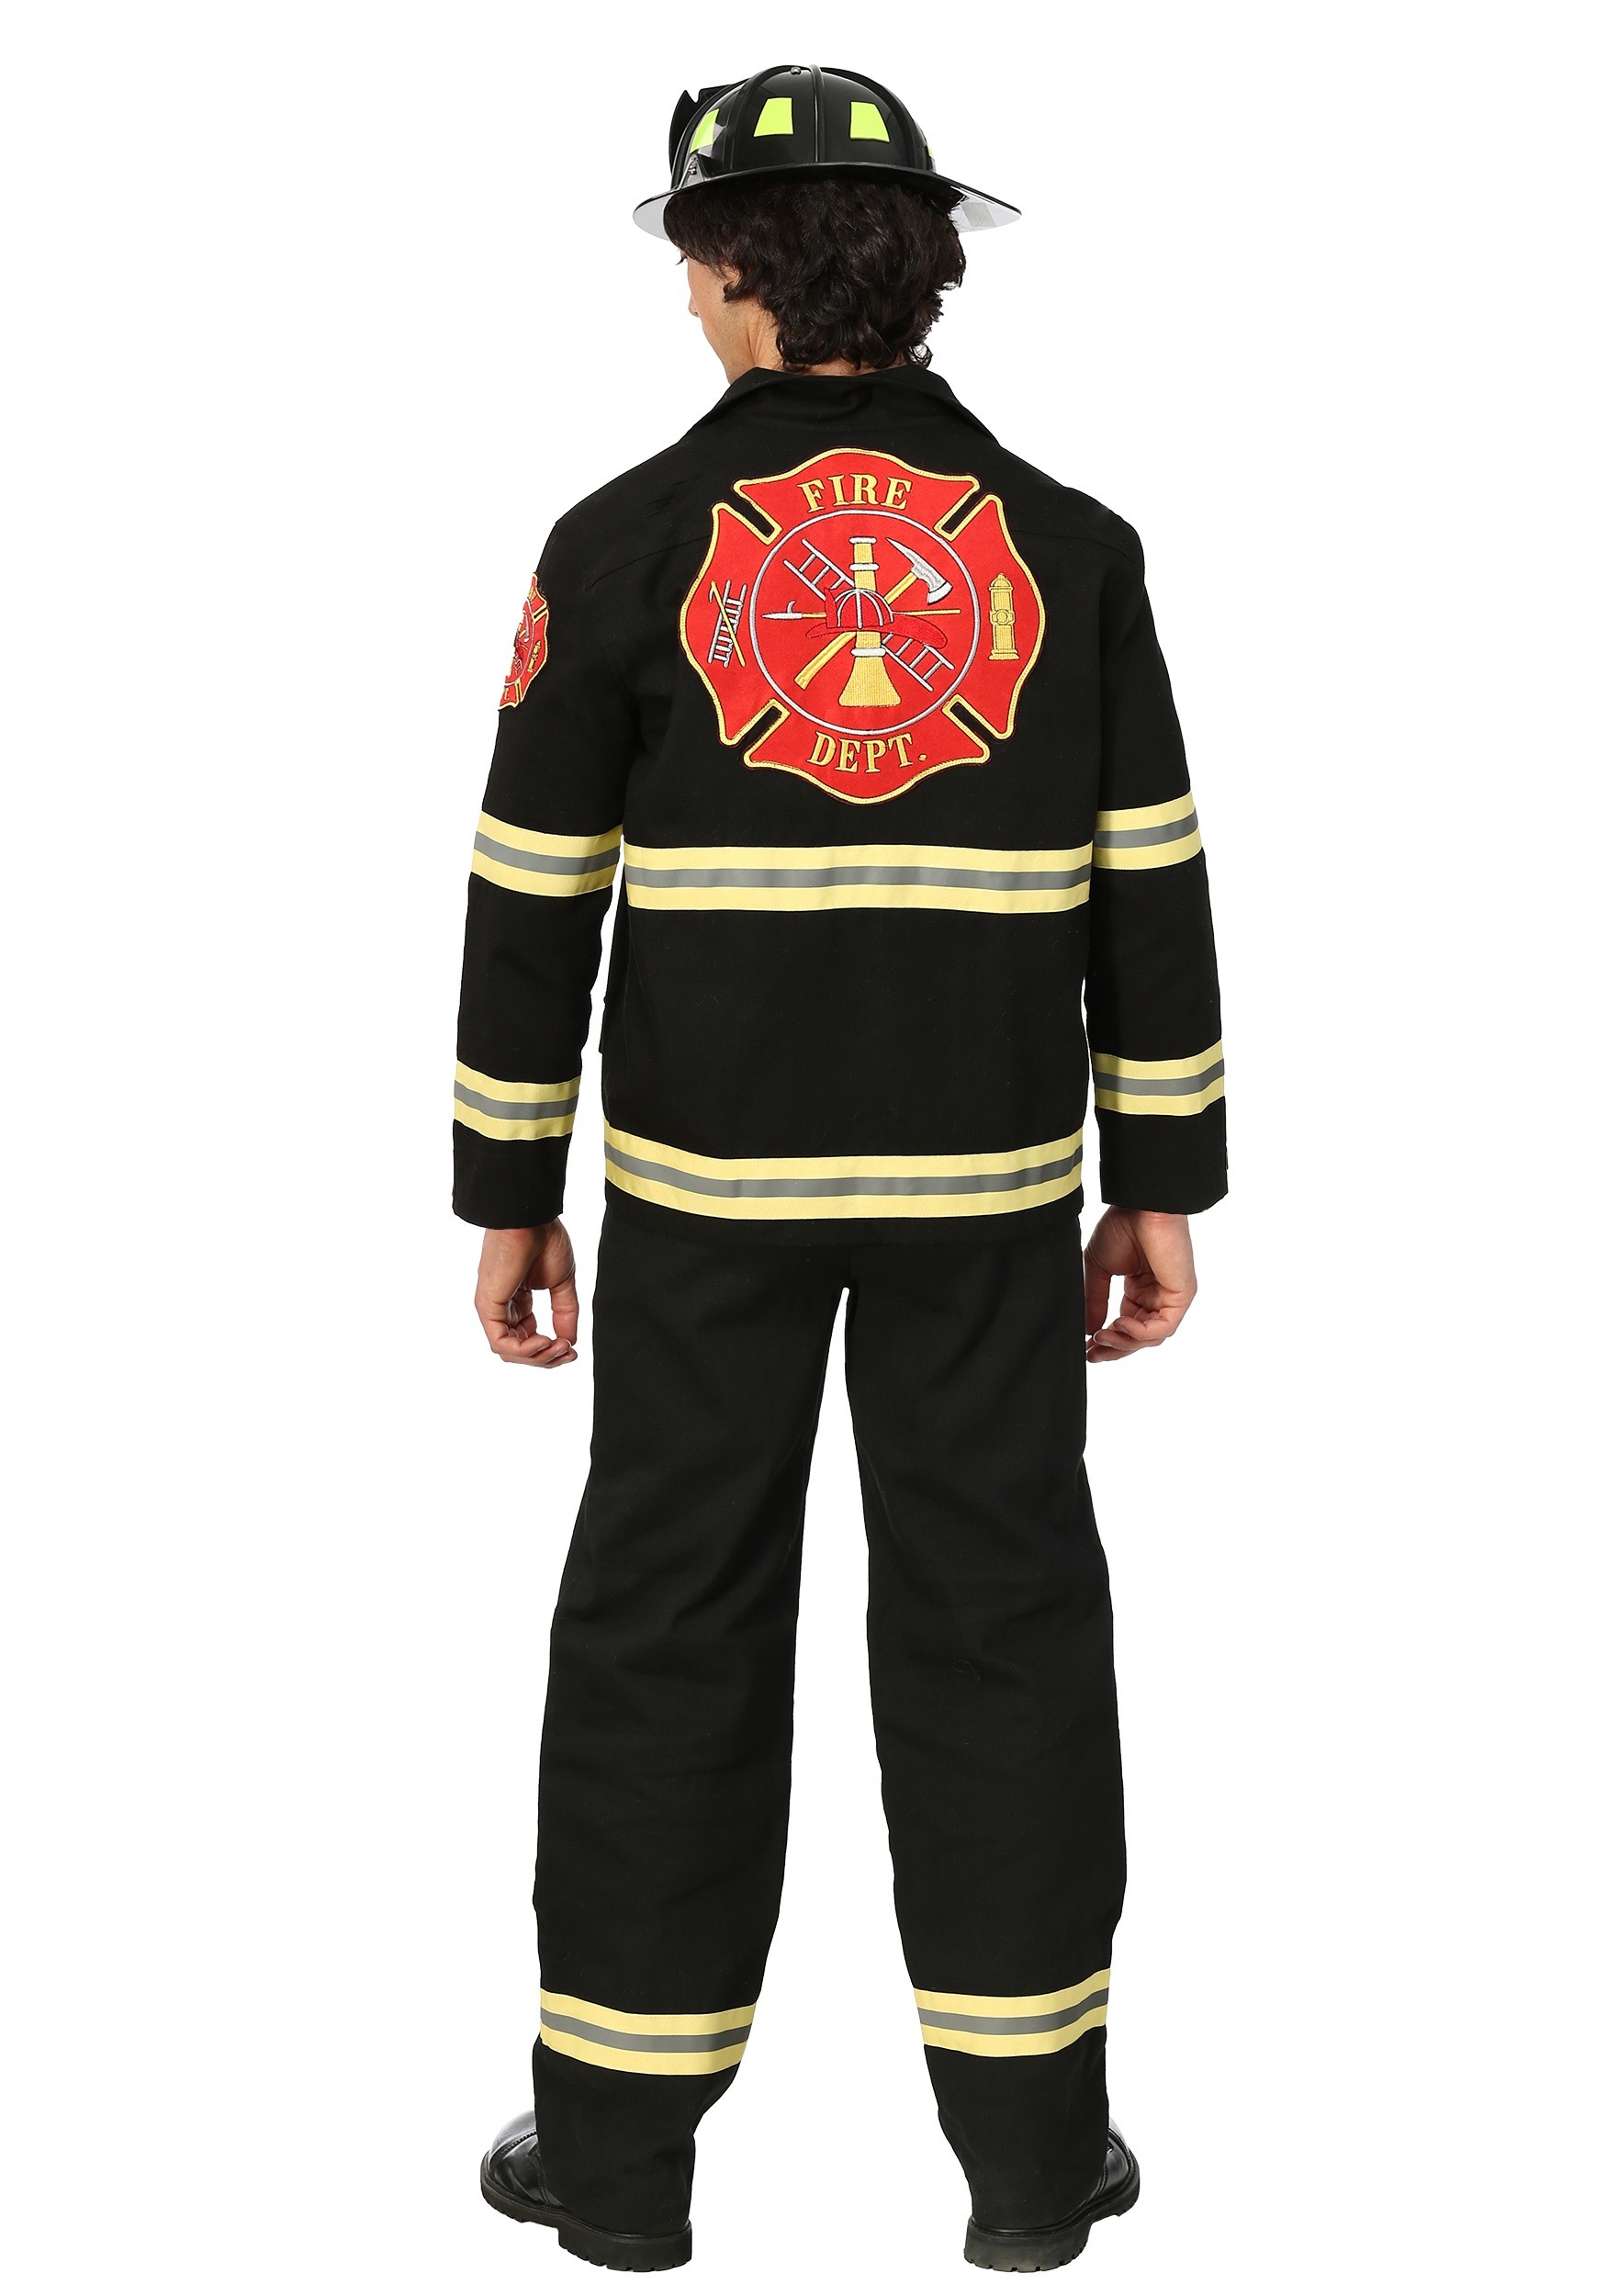 Black Uniform Firefighter Costume For Men